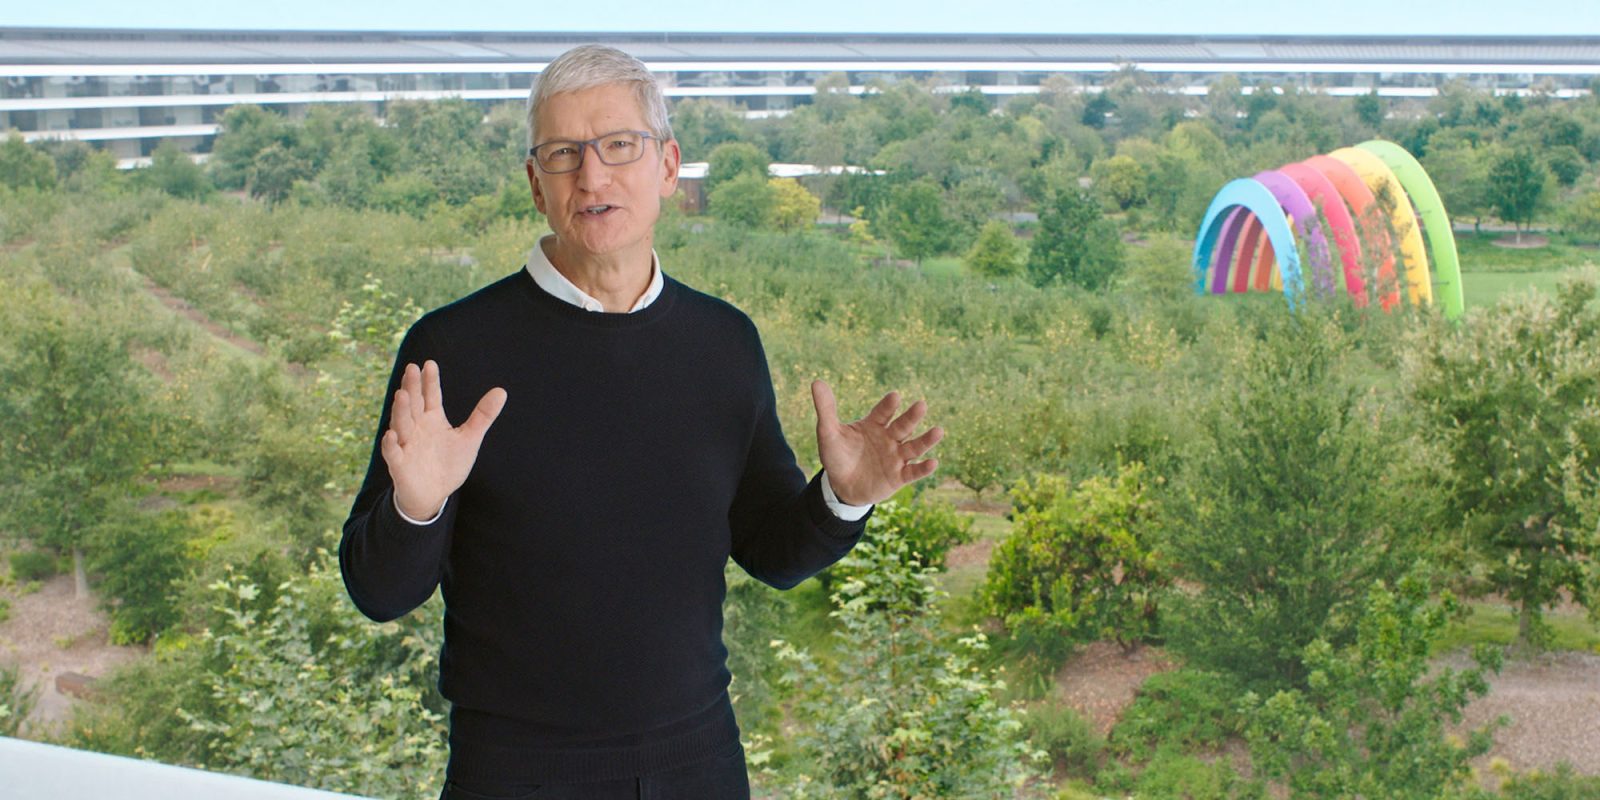 Apple списывает иск, в котором утверждалось, что Тим Кук обманул инвесторов на 490 миллионов долларов